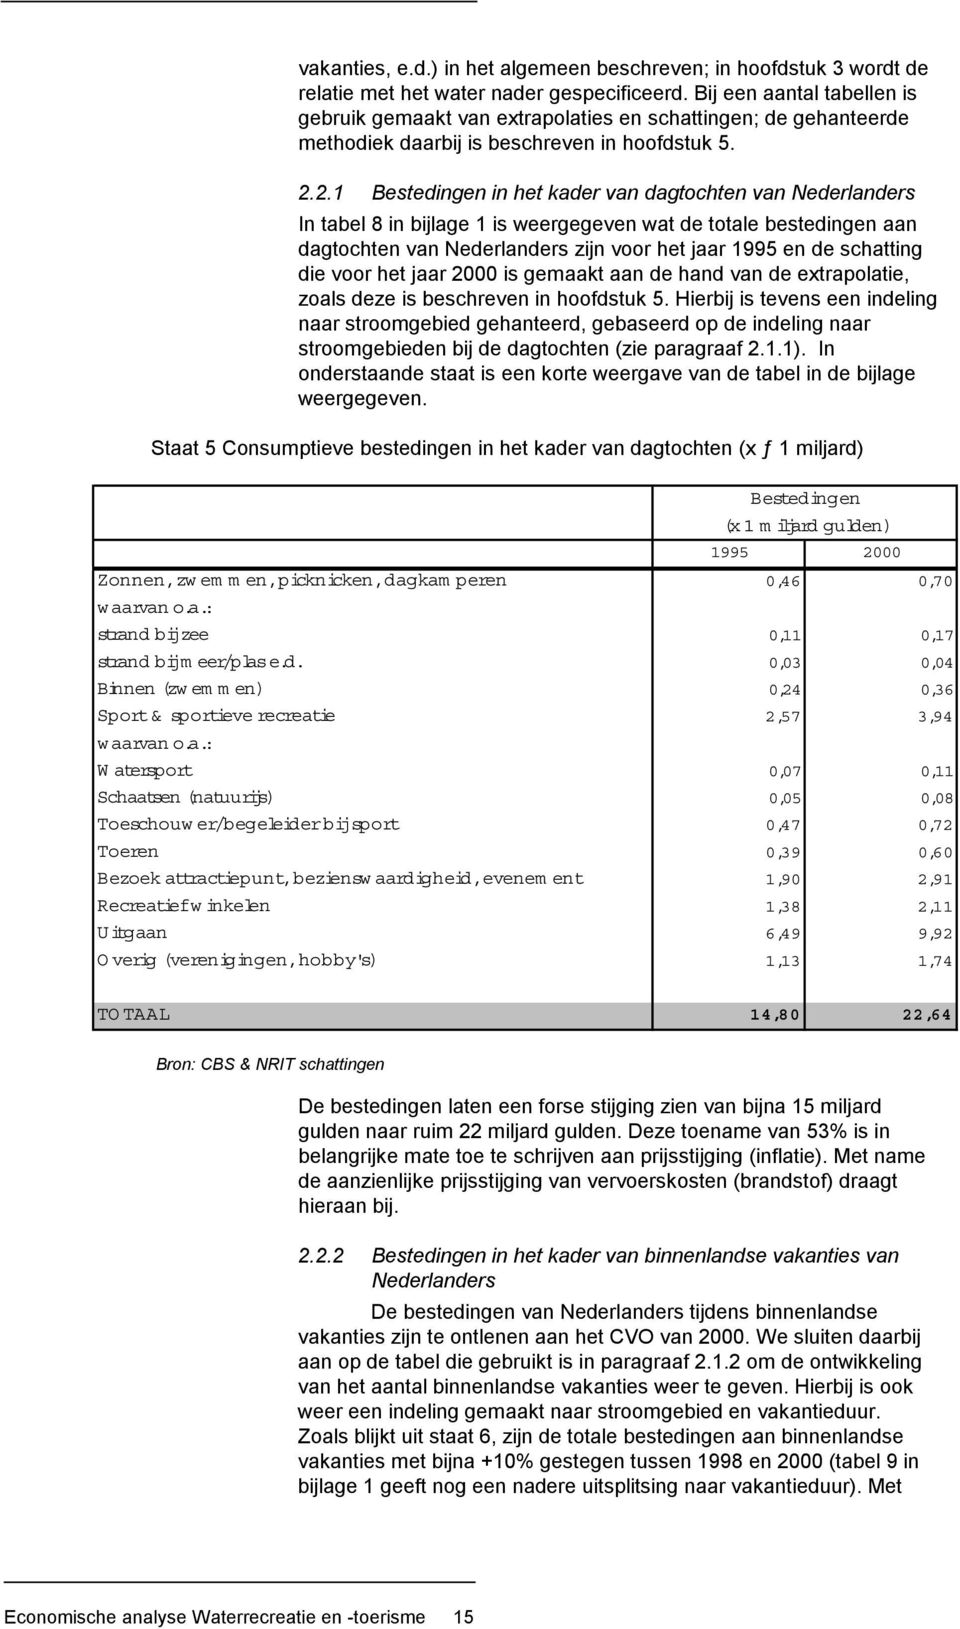 2.1 Bestedingen in het kader van dagtochten van Nederlanders In tabel 8 in bijlage 1 is weergegeven wat de totale bestedingen aan dagtochten van Nederlanders zijn voor het jaar 1995 en de schatting